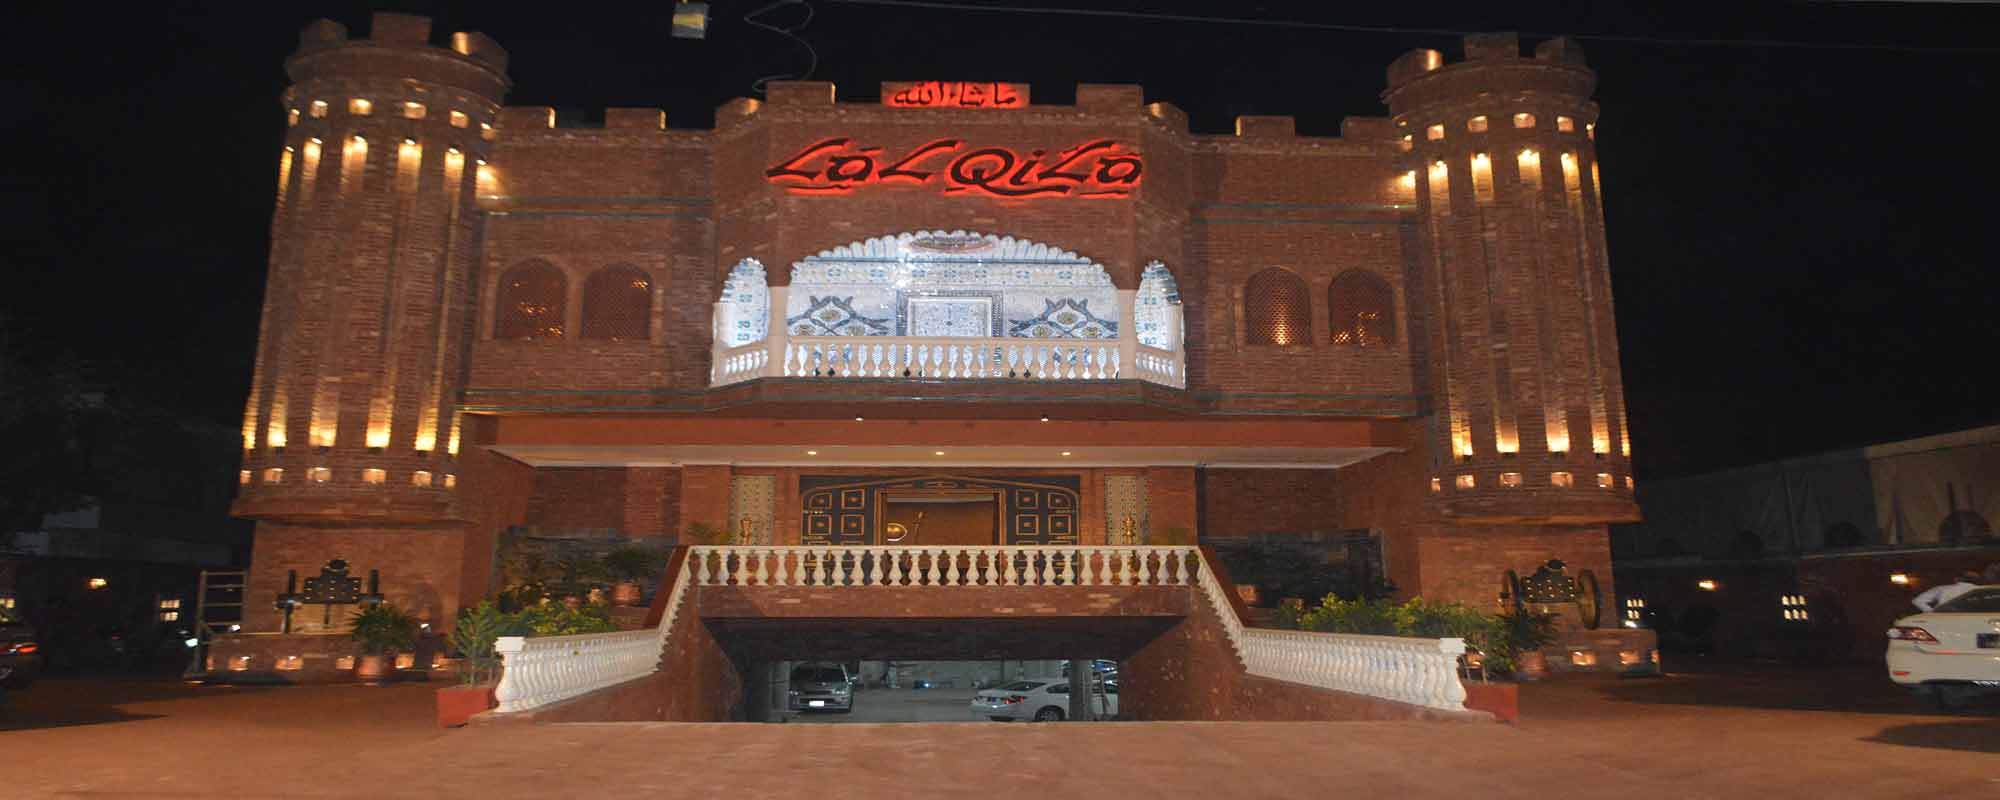 Best desi food restaurants in Lahore